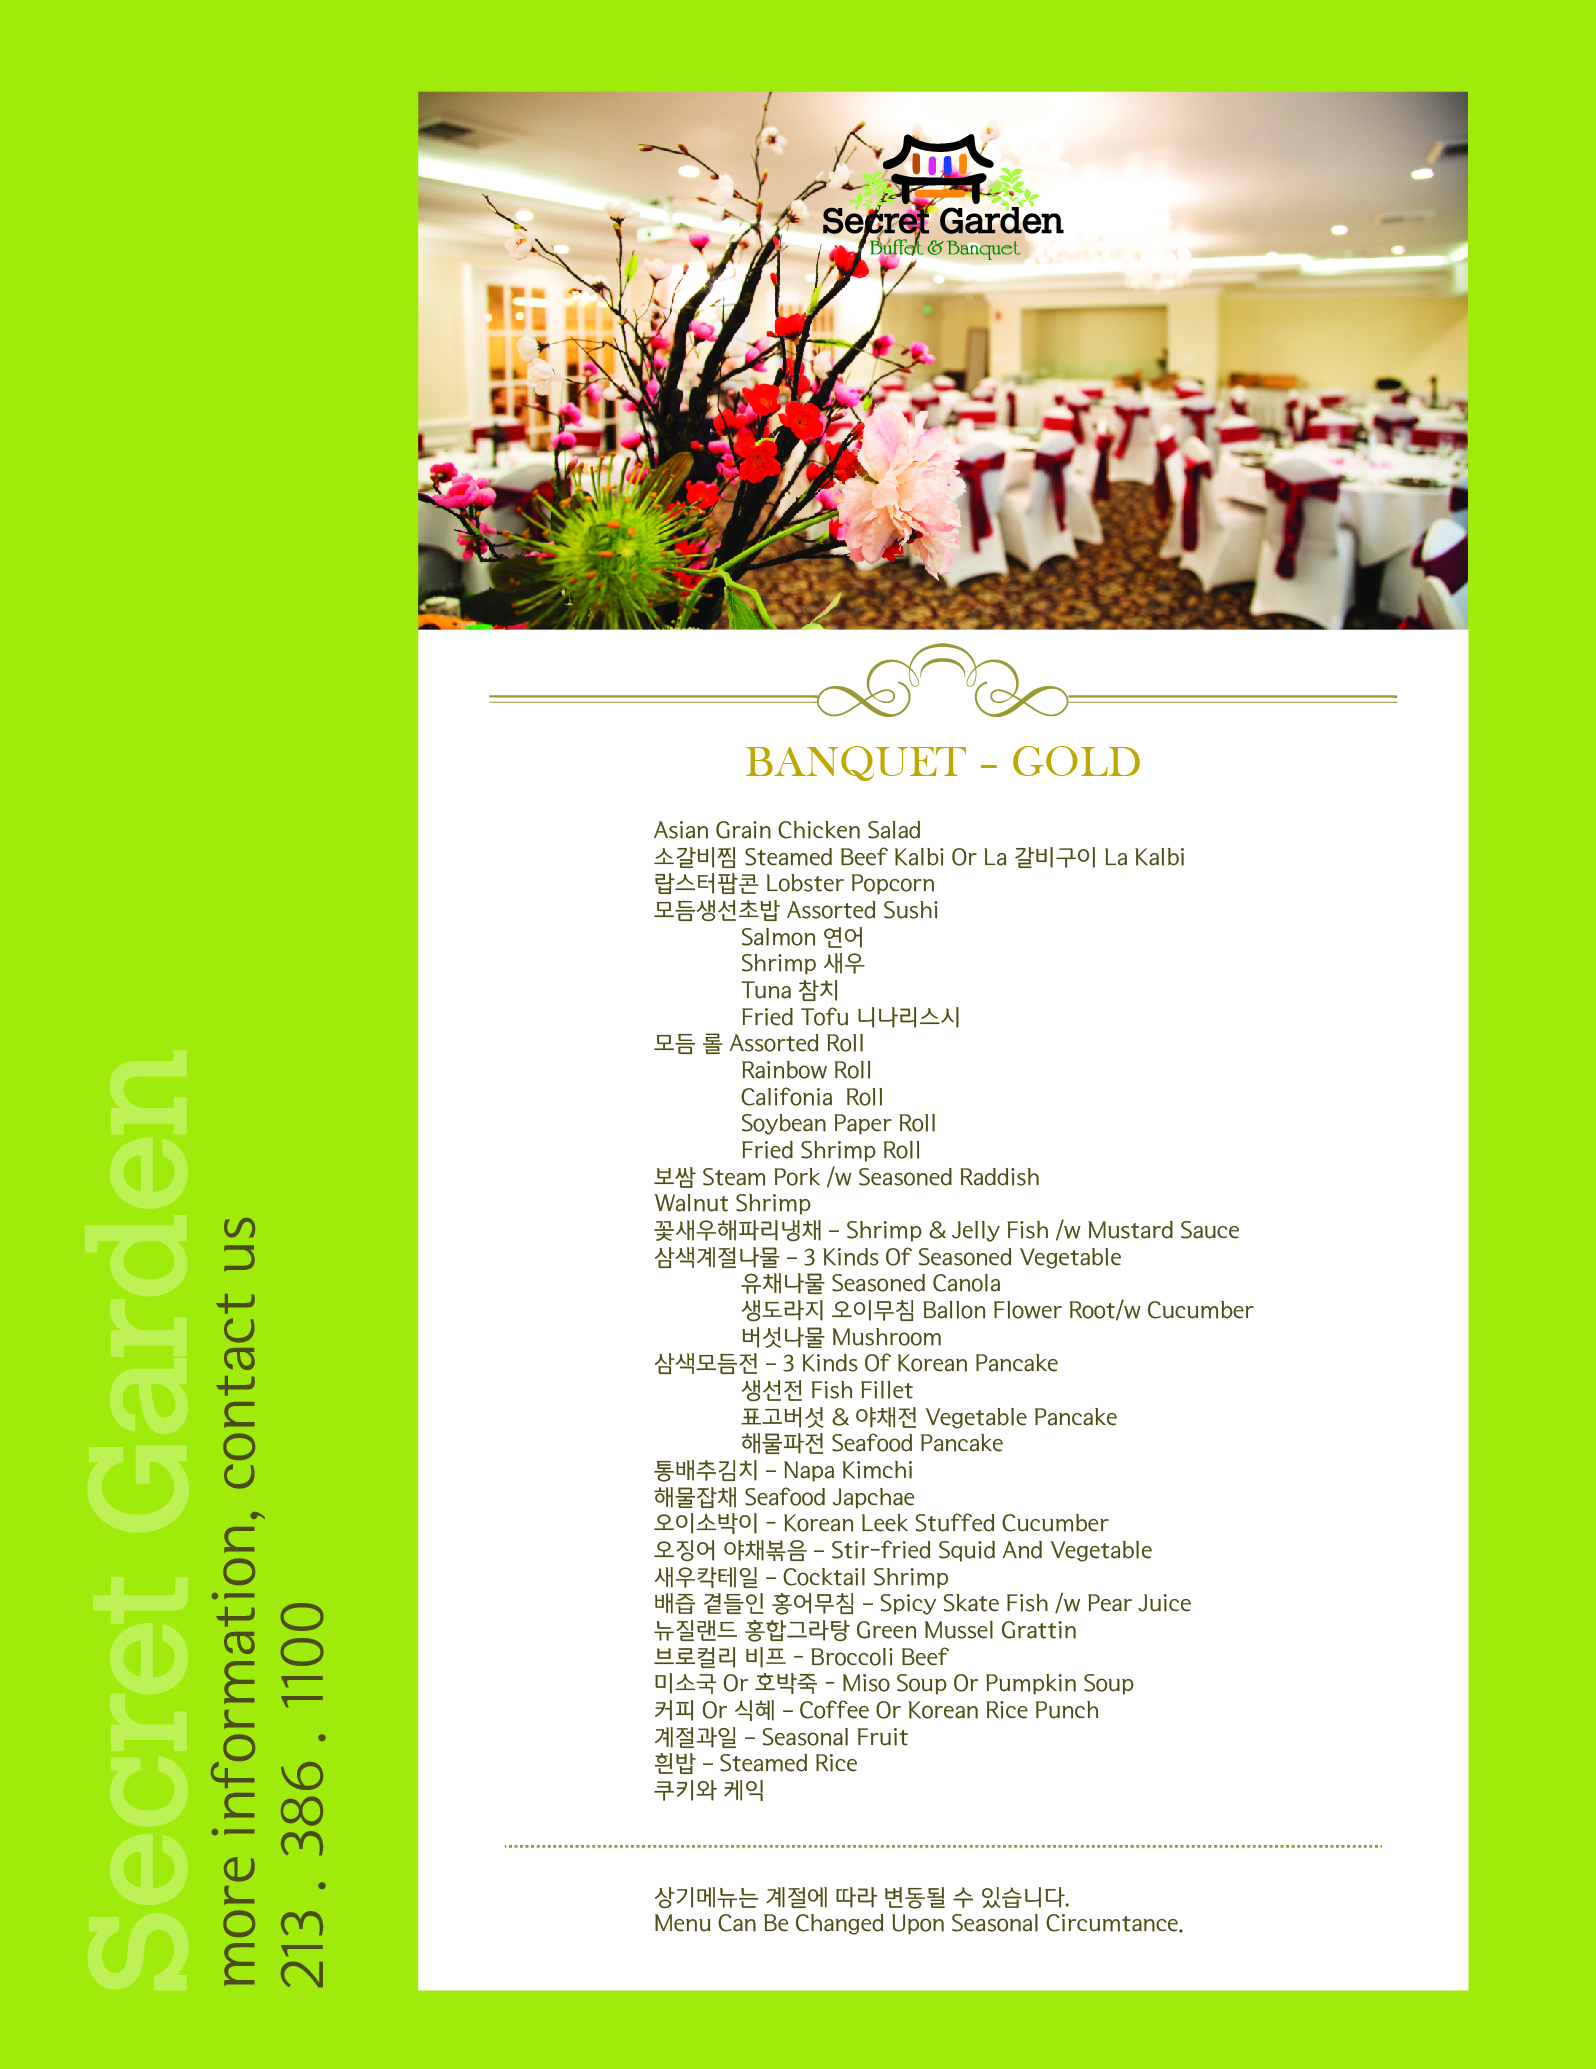 secret garden menu-BANQUET GOLD